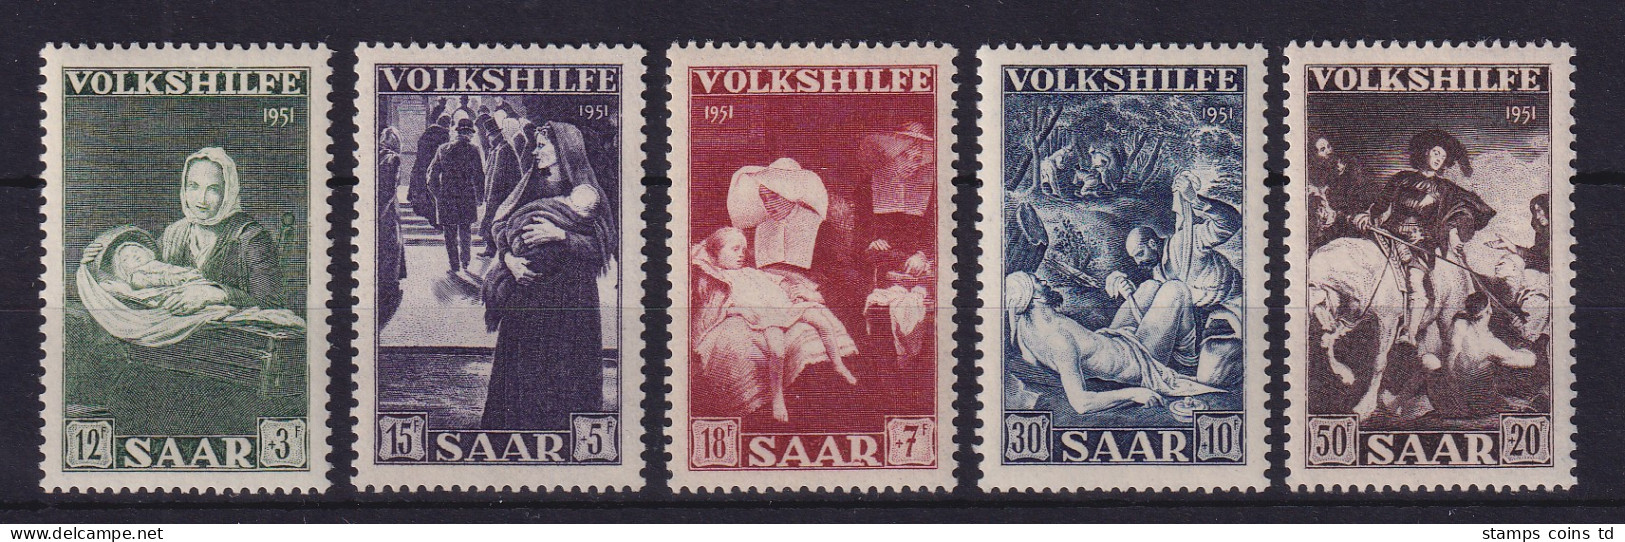 Saarland 1951 Volkshilfe  Mi.-Nr. 309-313 Postfrisch ** - Ongebruikt